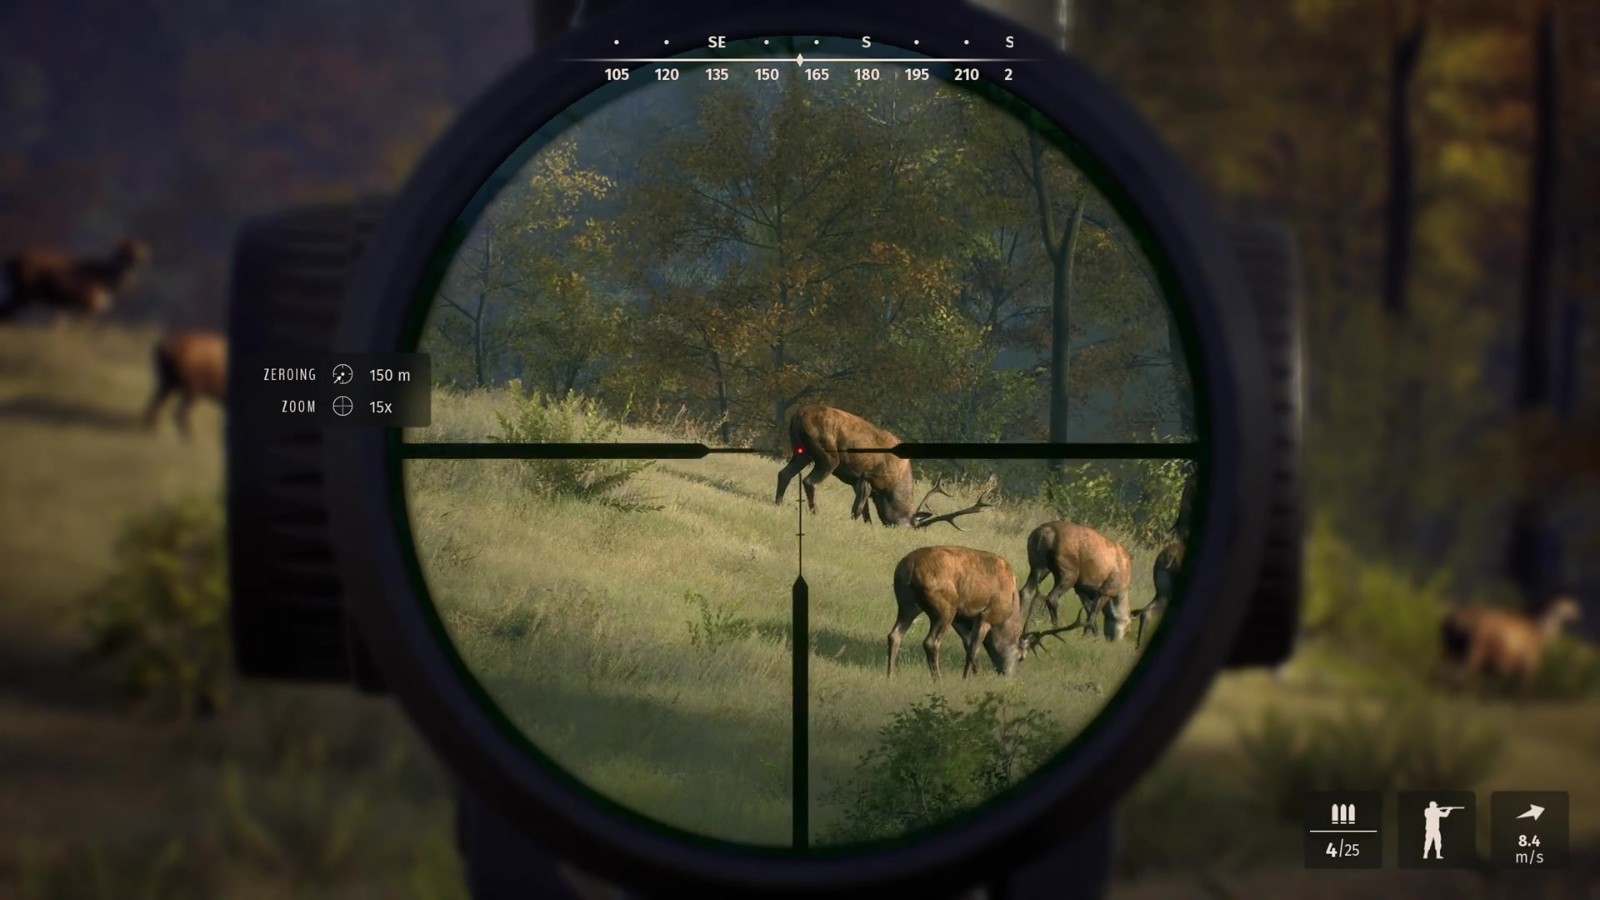 狩獵模擬遊戲《狩獵之道》新實機預告/配置信息公佈